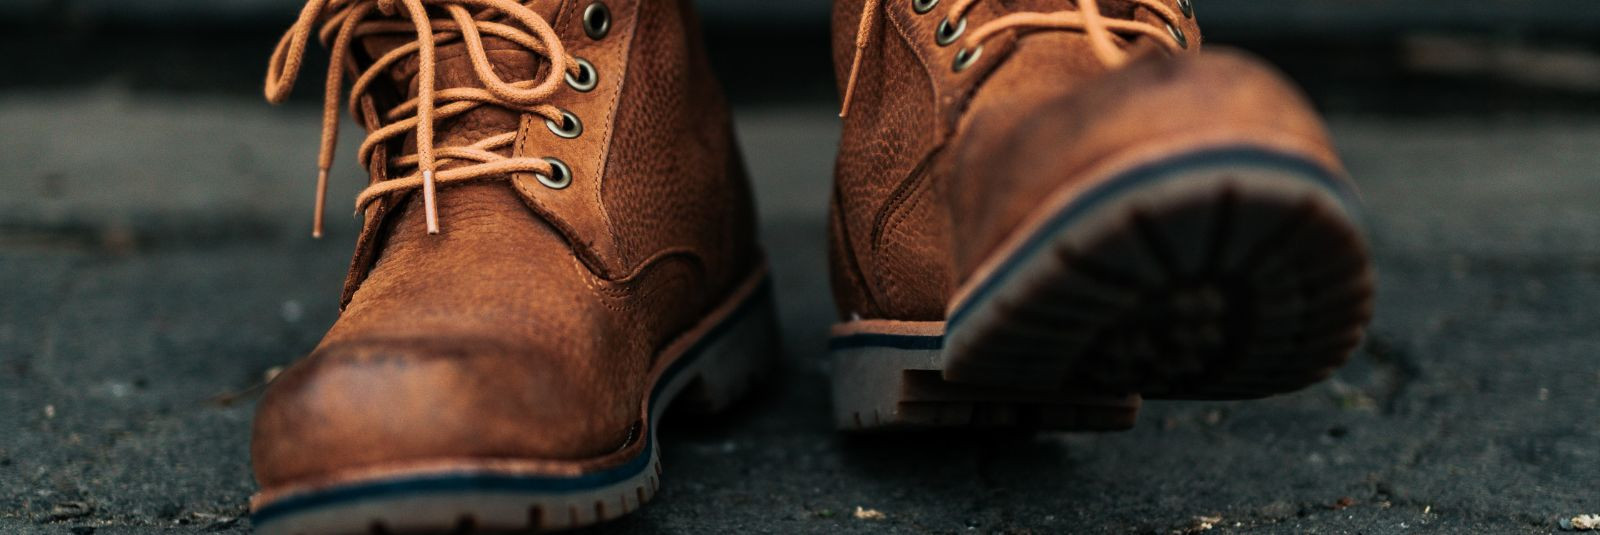 Kui otsite ideaalseid jalanõusid, mis ühendavad kvaliteedi, stiili ja mugavuse, siis olete jõudnud õigesse kohta. Kingamarket on 1Kingamarket OÜ kaubamärk, mill